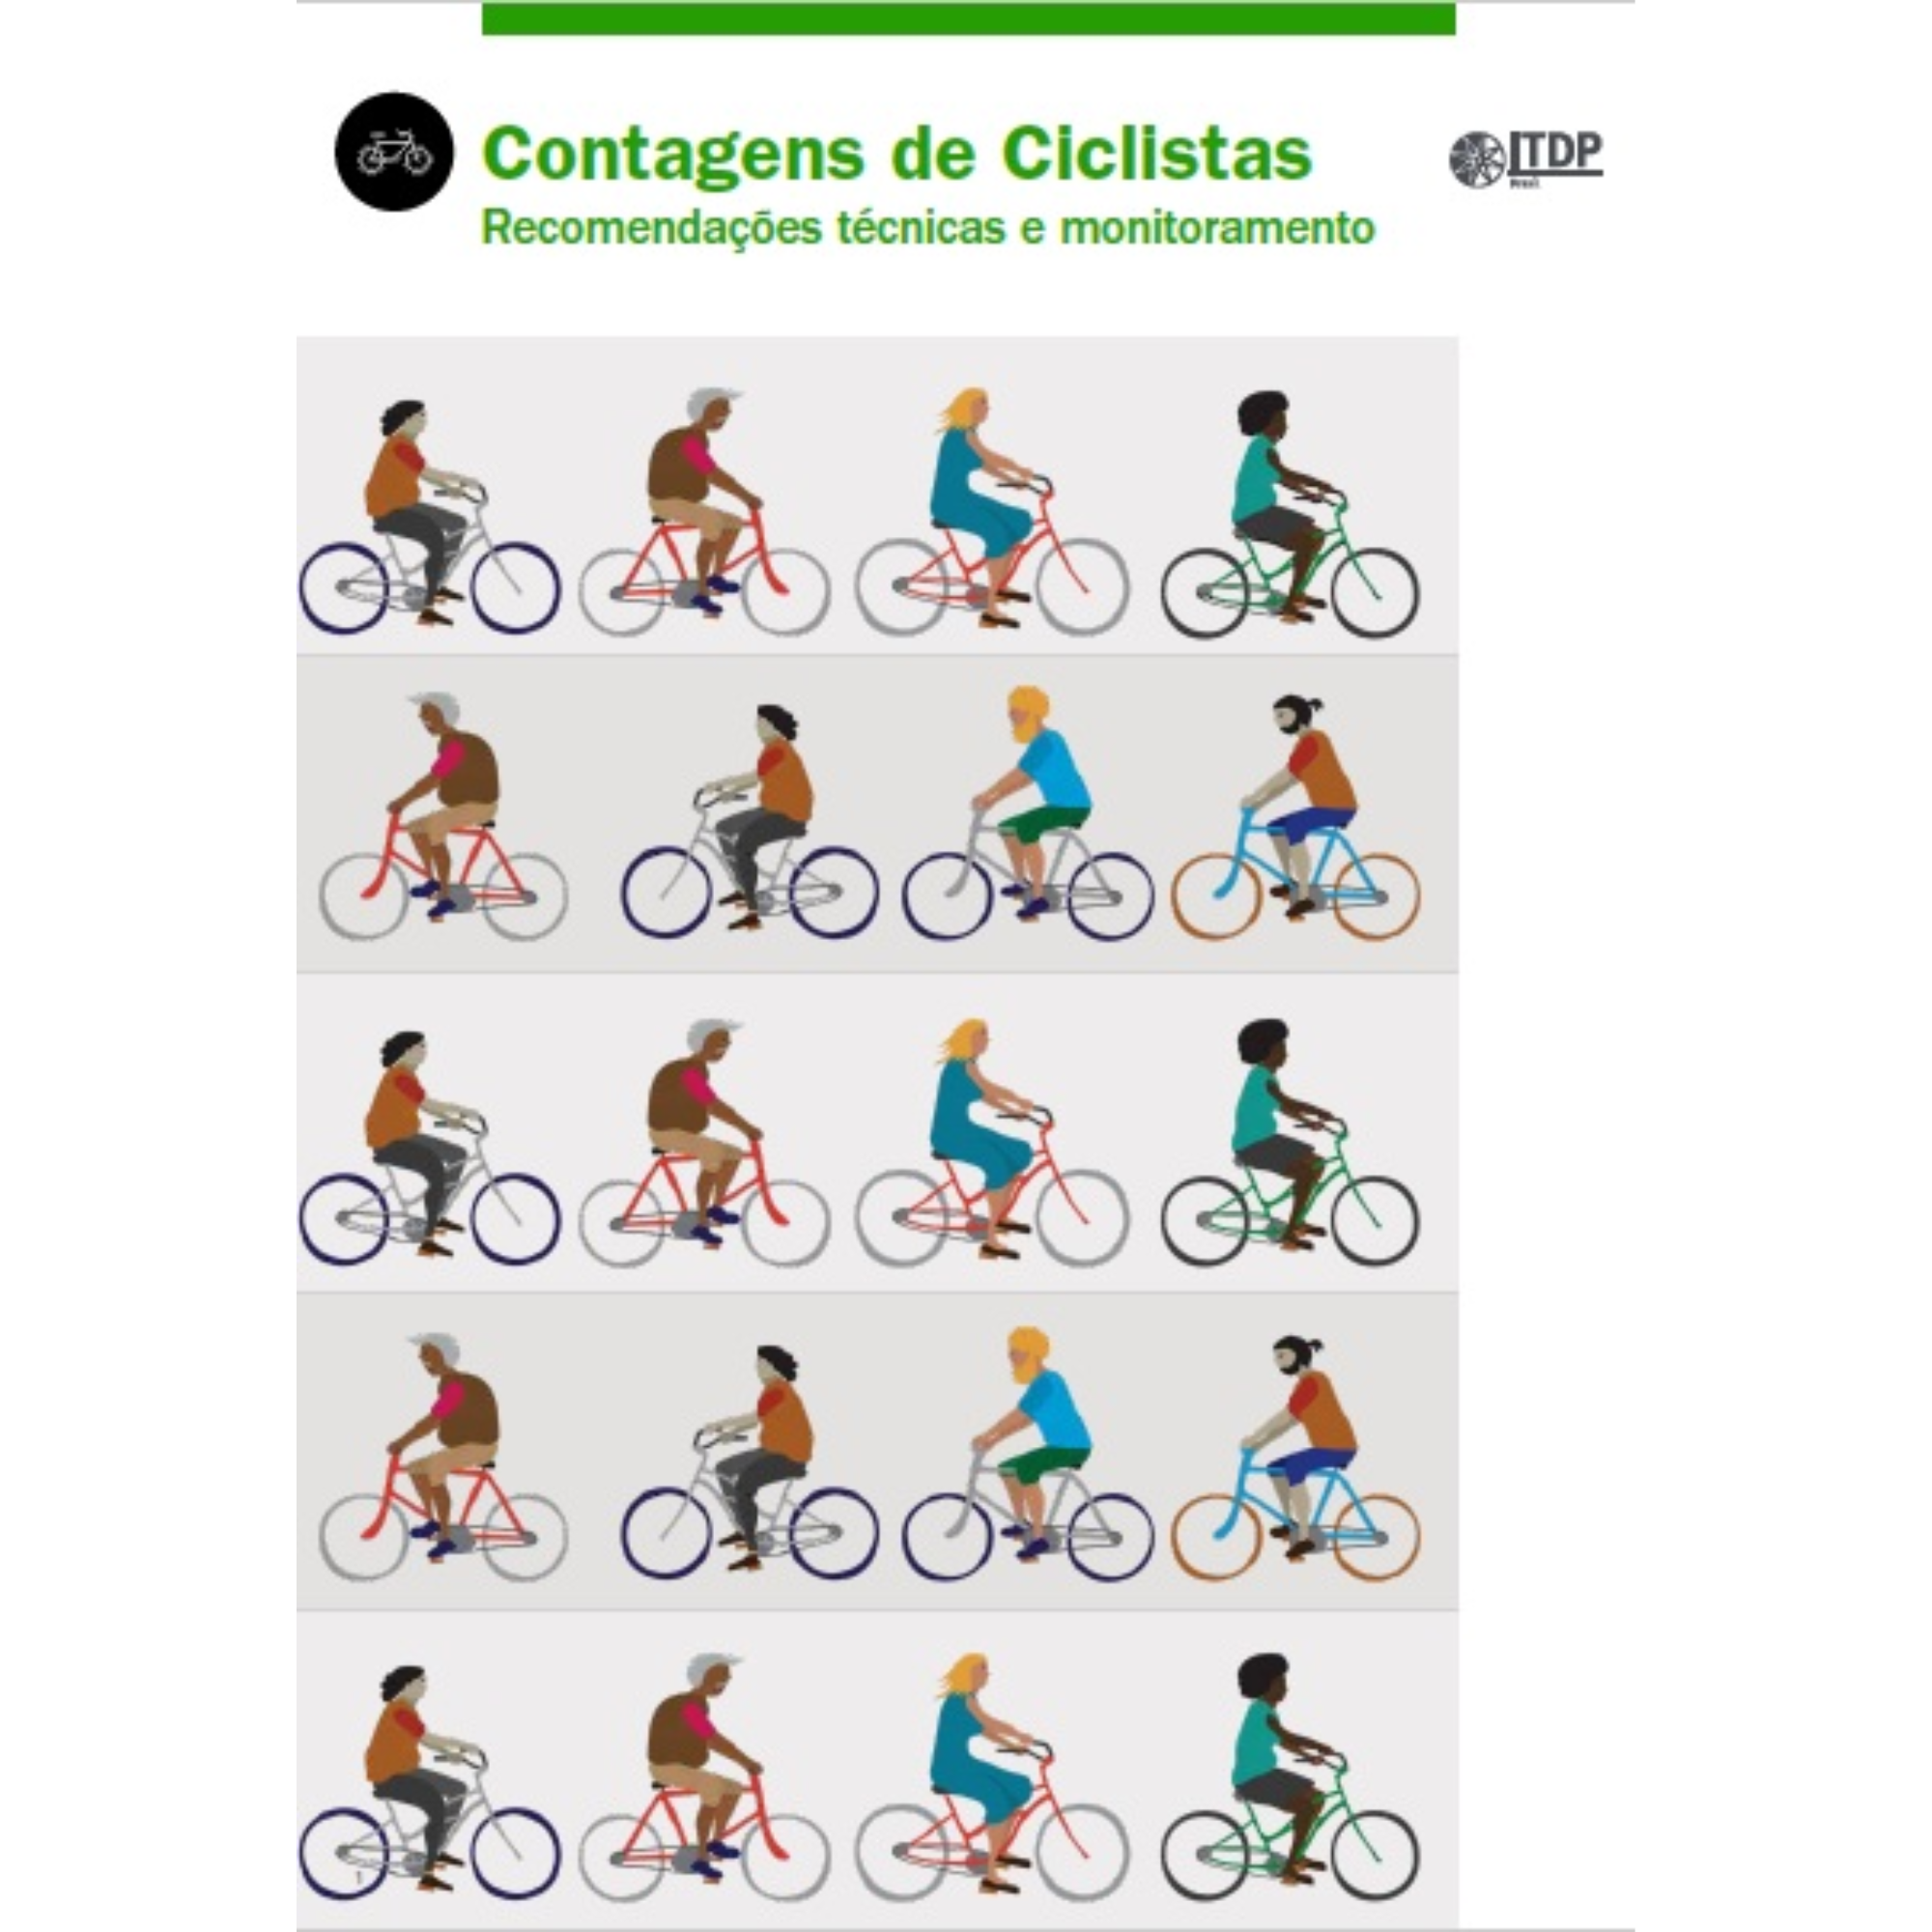 Contagens de Ciclistas – Recomendações técnicas e monitoramento